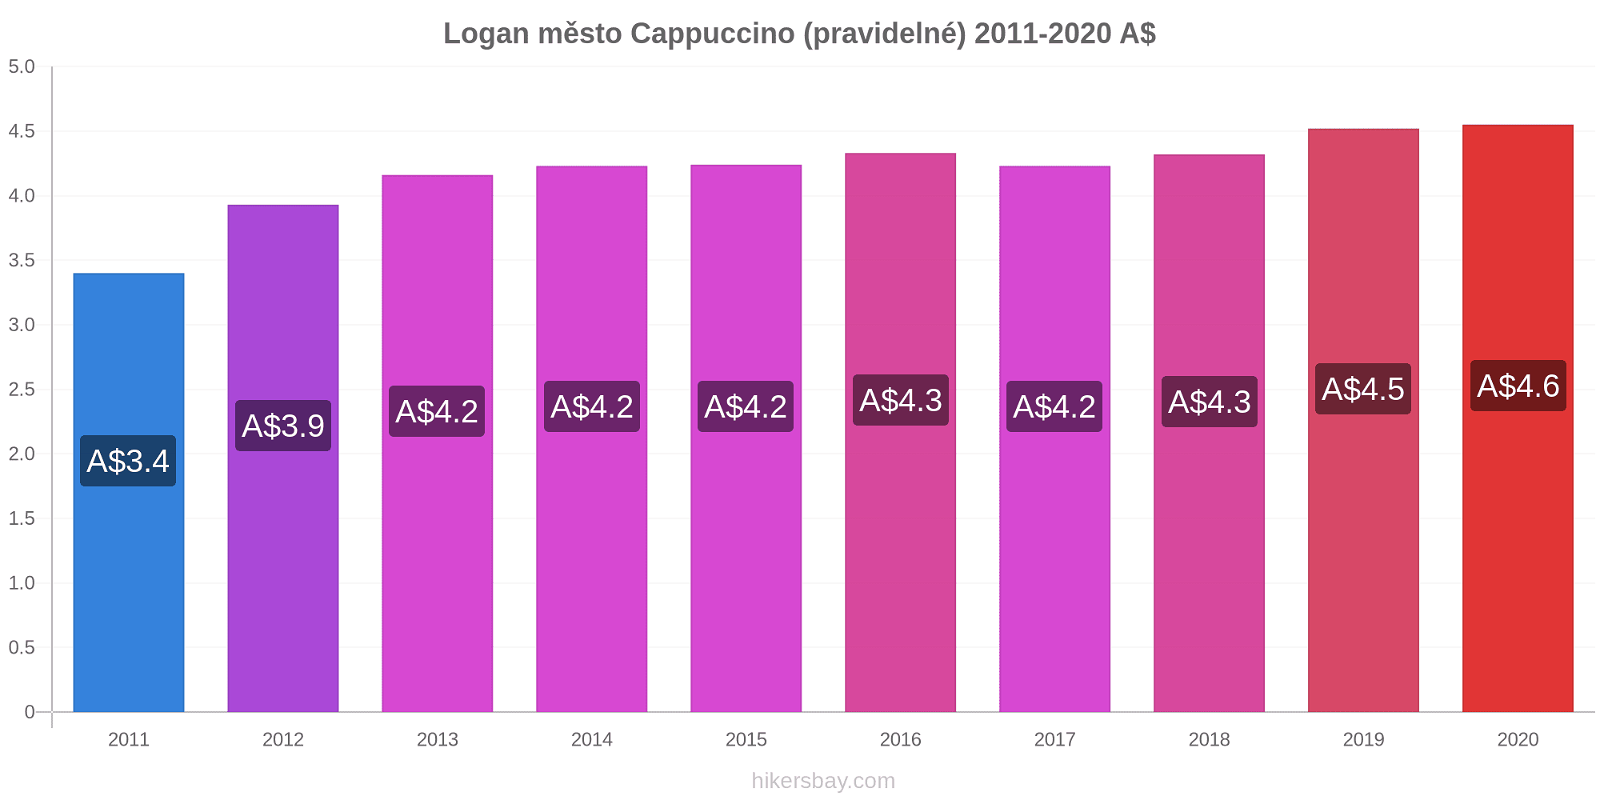 Logan město změny cen Cappuccino (pravidelné) hikersbay.com